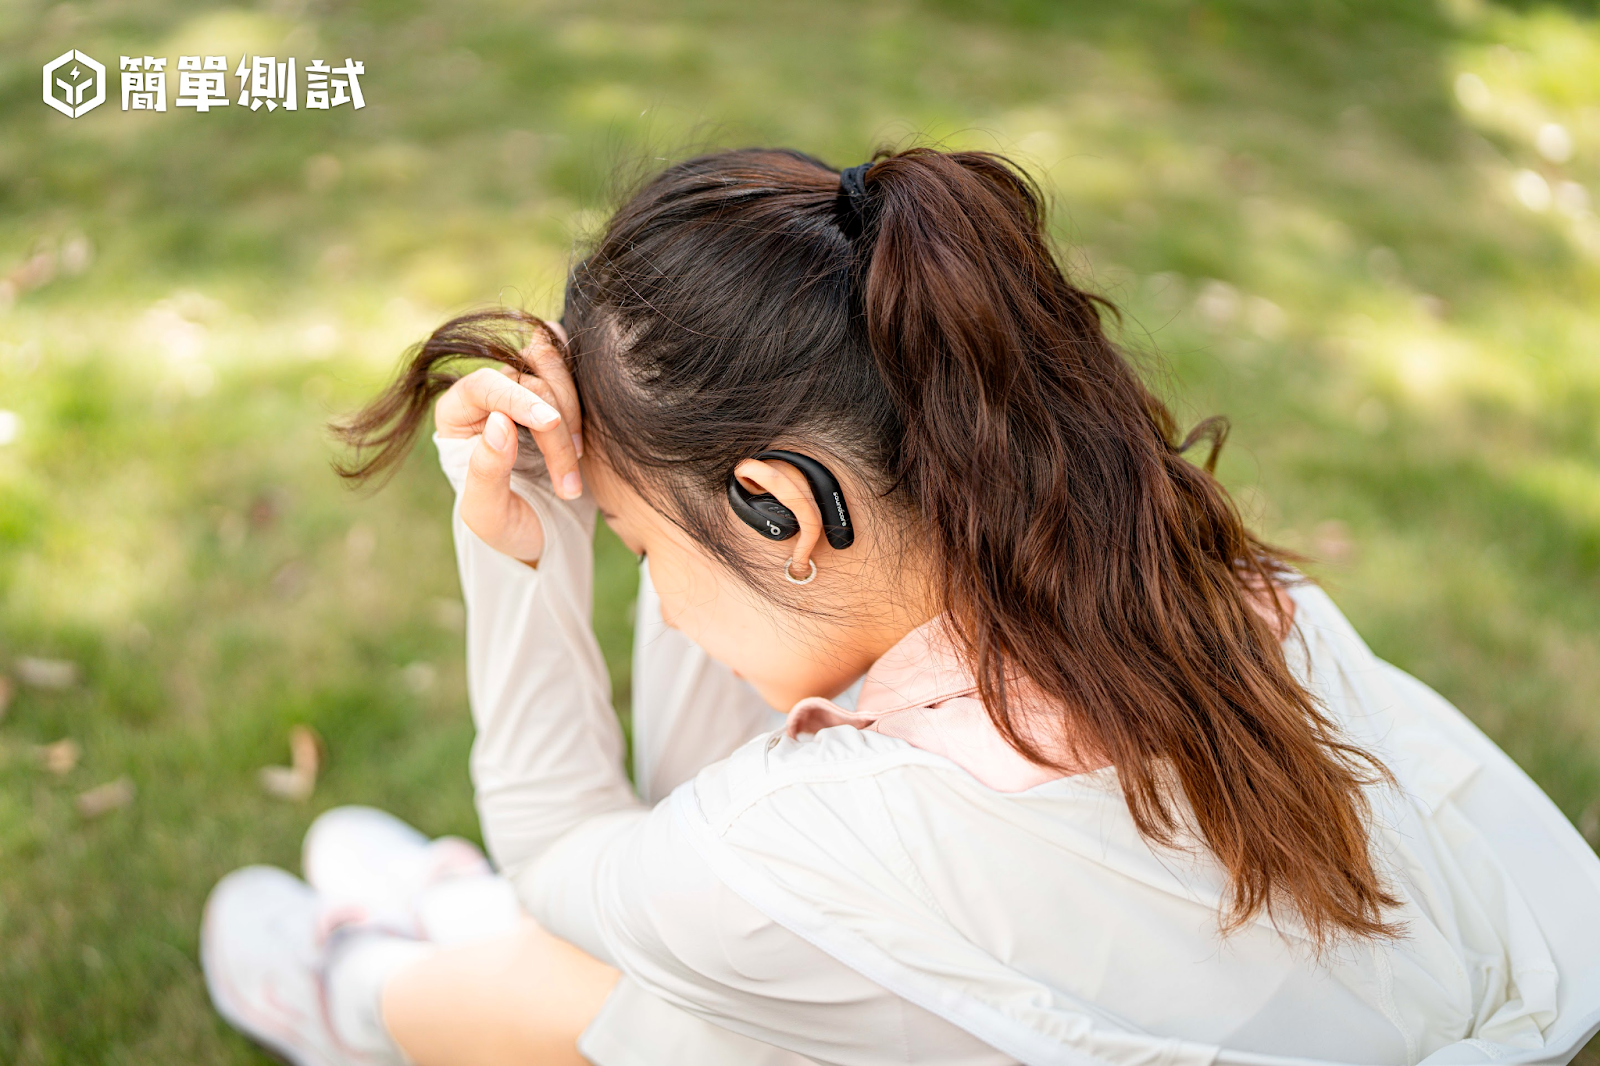 搶先試聽！soundcore AeroFit Pro 耳掛式藍牙耳機全方位評測 — 支援 LDAC、真無線設計震撼登場！